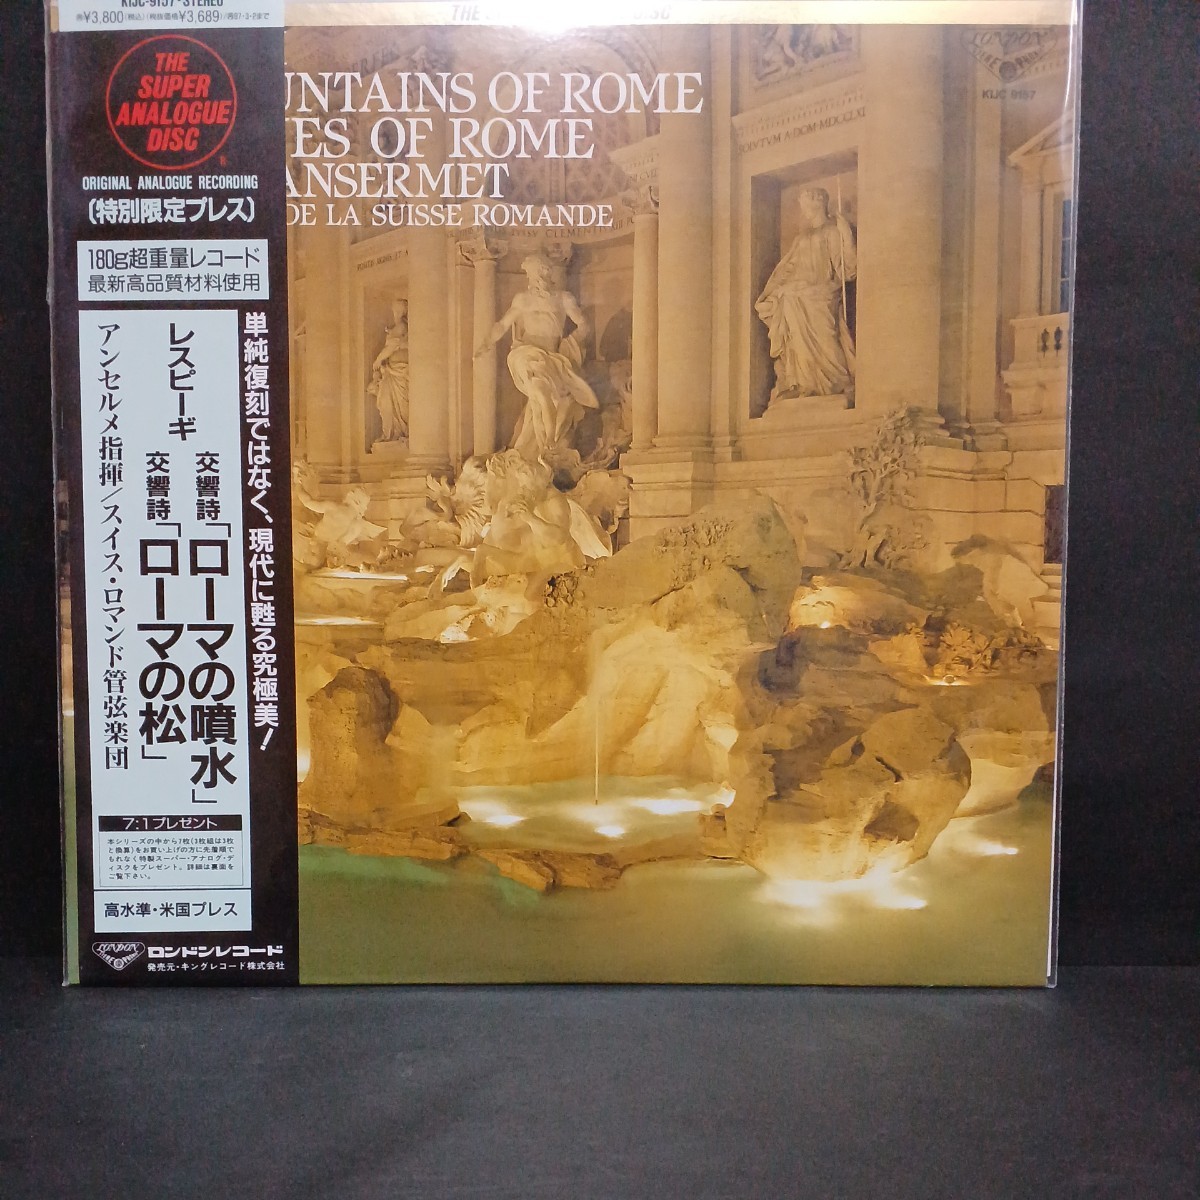 キングスーパーアナログKIJC-9157レスピーギ交響詩「ローマの噴水」「ローマの松」アンセルメ指揮スイスロマンド管弦楽団_画像1